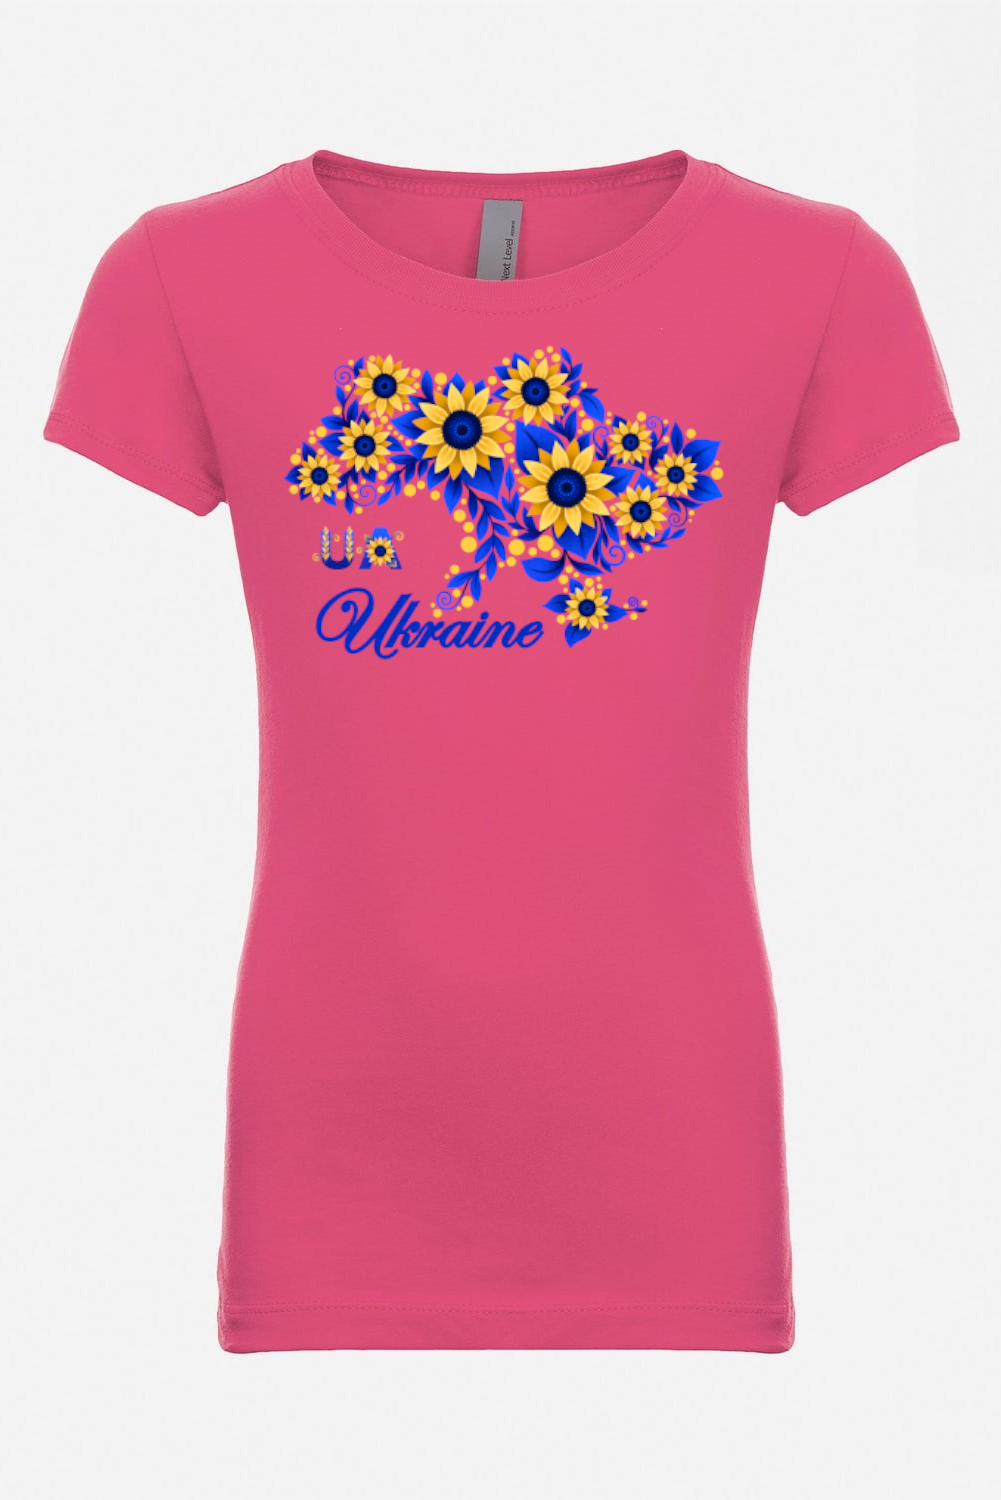 Girl's t-shirt "Sunflower Ukraine"